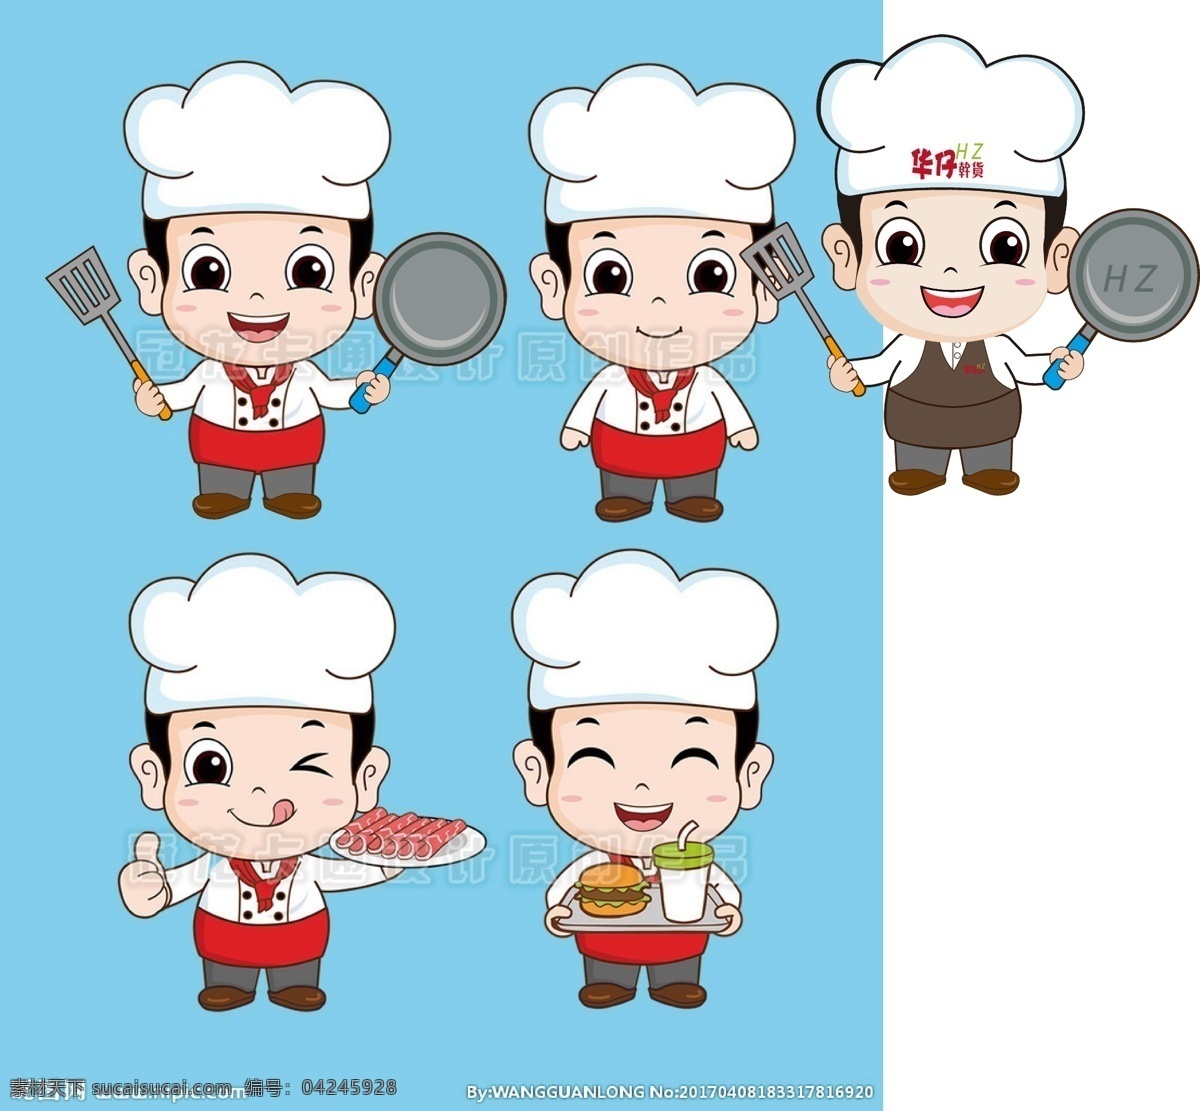 暖 男 厨师 卡通 形象 人物 暖男 卡通男孩